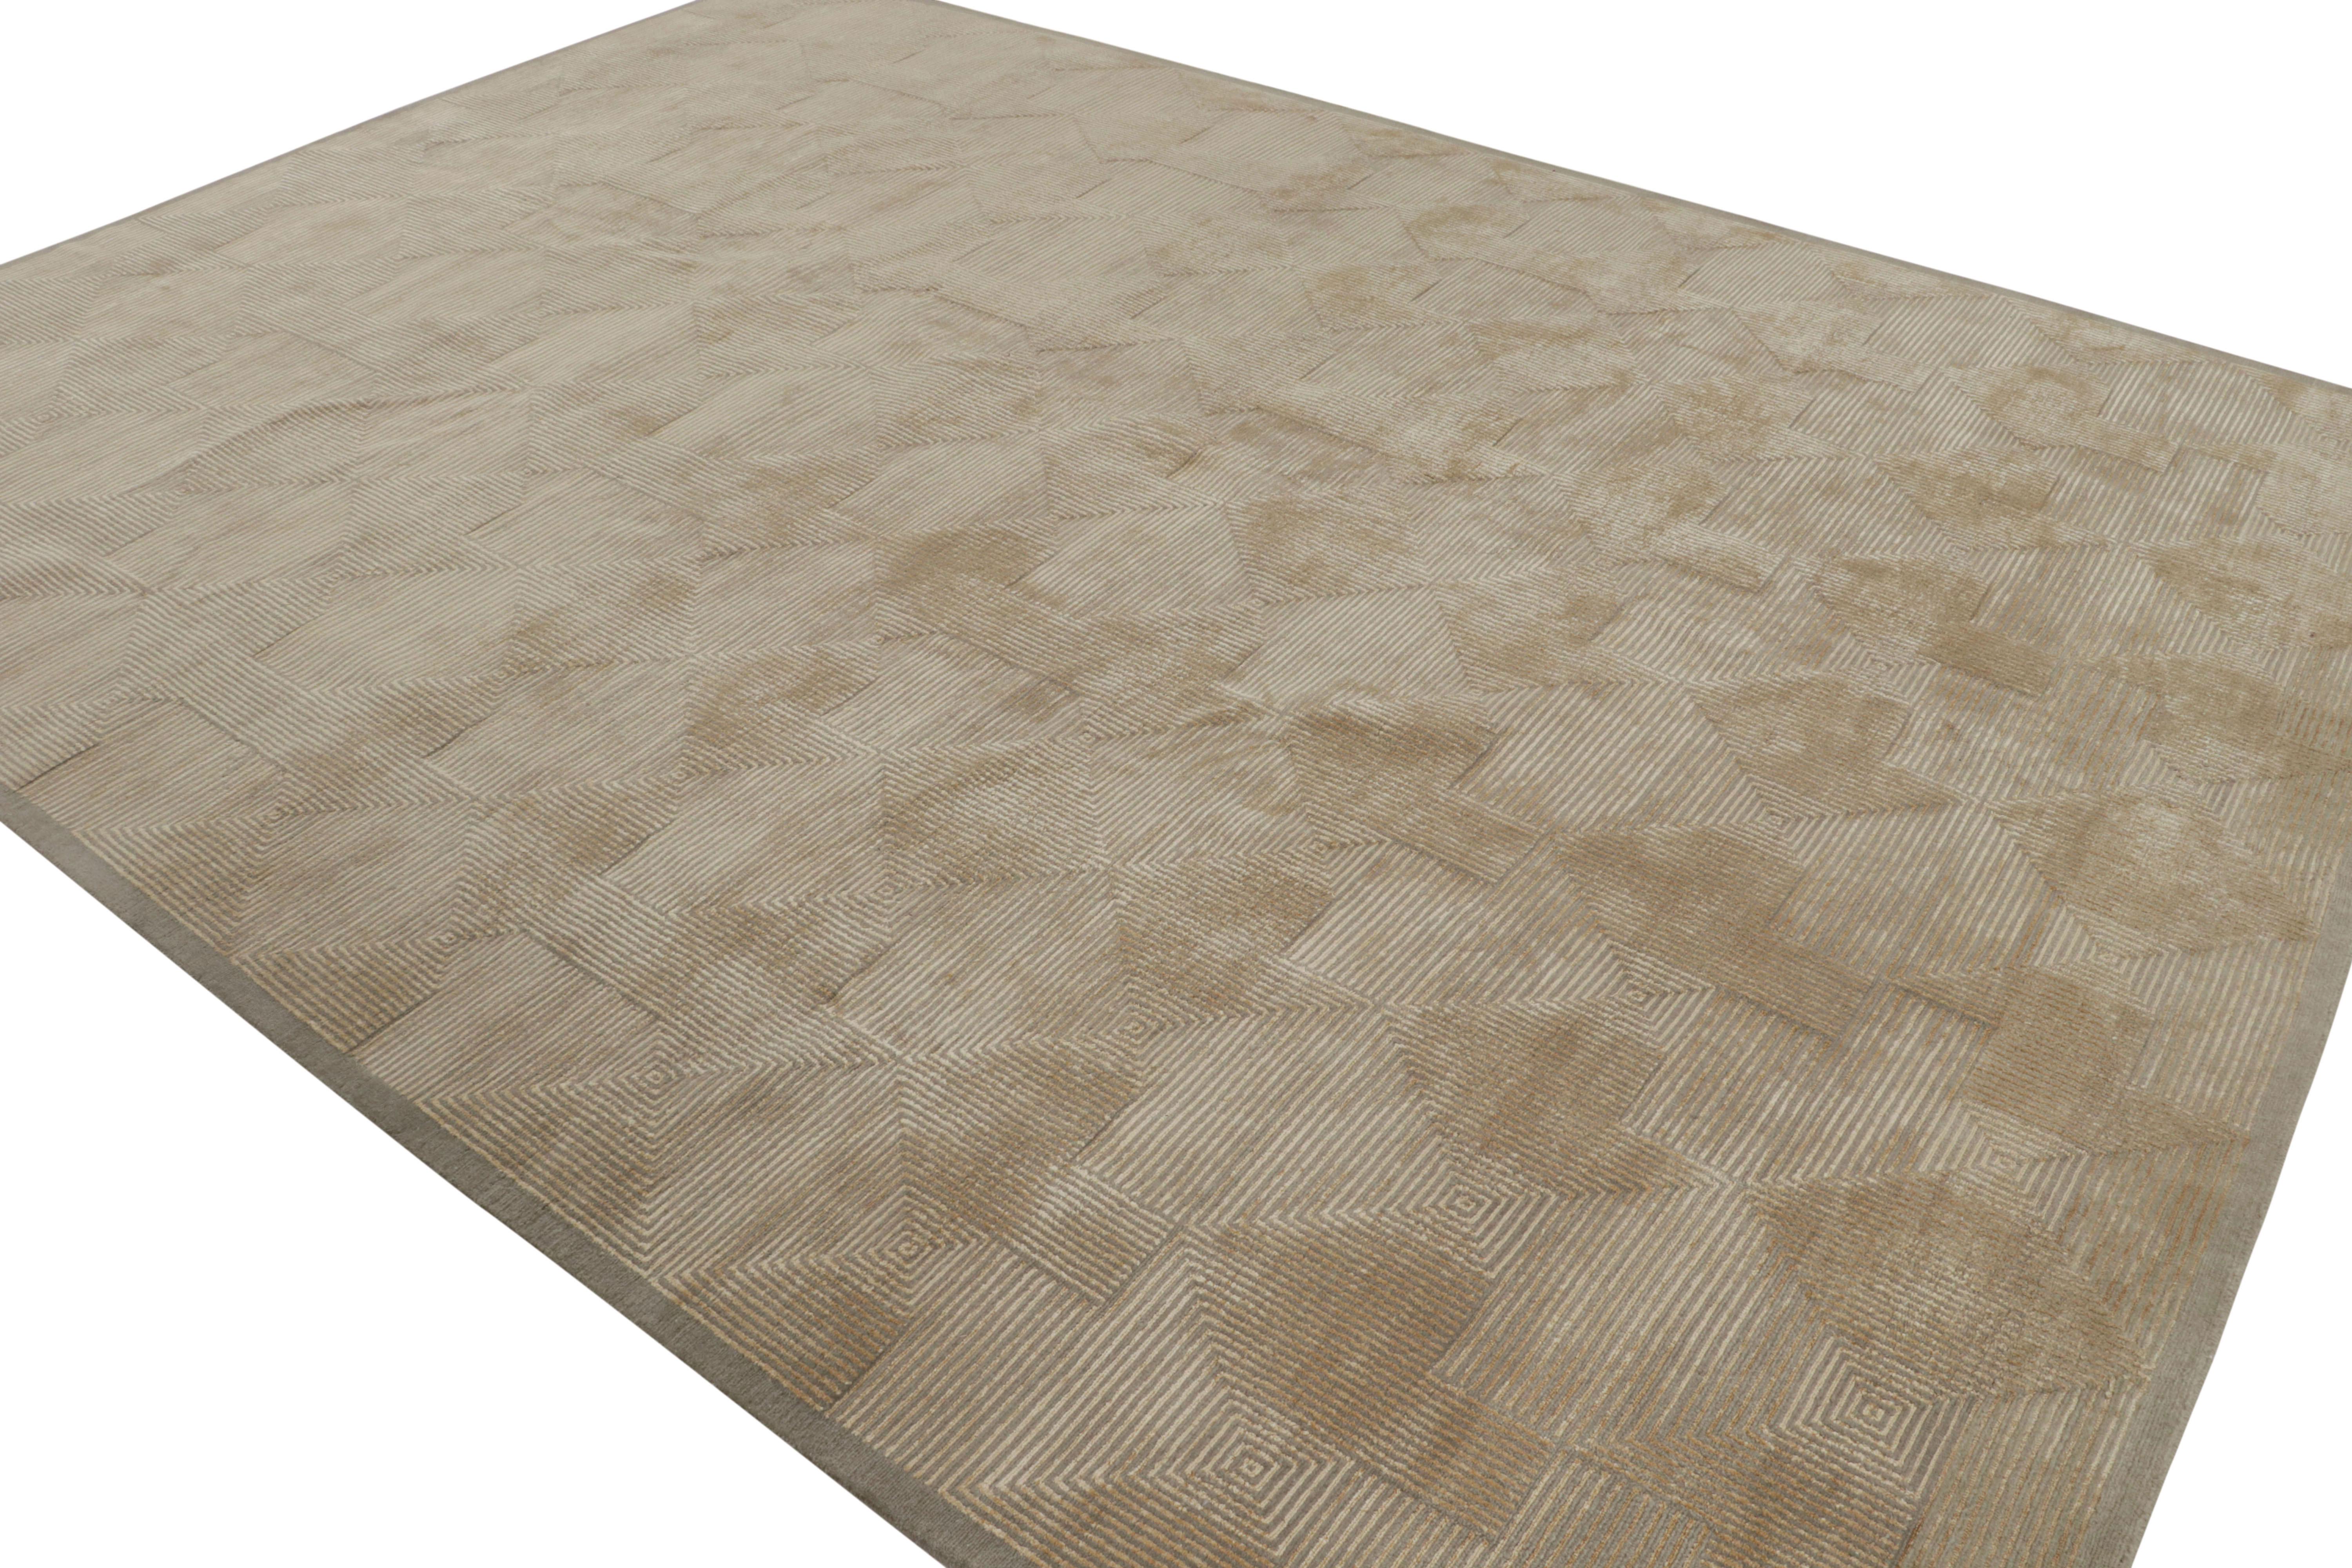 Dieser zeitgenössische Teppich im Format 9x12 ist eine neue Ergänzung der Art Deco-Teppichkollektion von Rug & Kilim. Das Design des handgeknüpften Stoffes aus einer luxuriösen Mischung aus Wolle und Seide ist vom Kubismus und ähnlichen